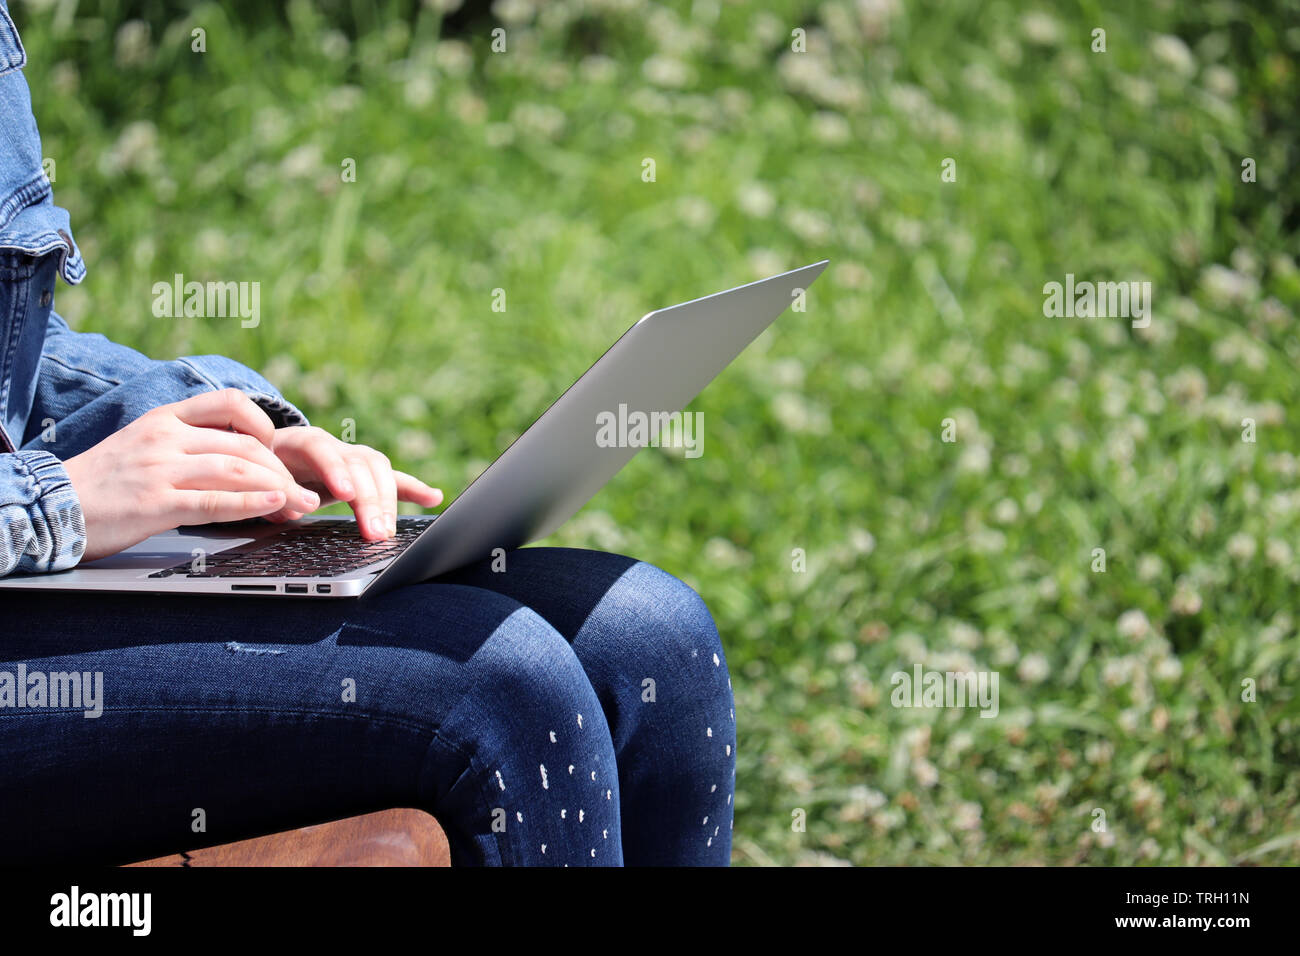 Ragazza seduta con un computer portatile su un banco in un parco d'estate. Mani femminili su una tastiera, il concetto di studente, lavorando all'aperto, imprenditrice, communi online Foto Stock